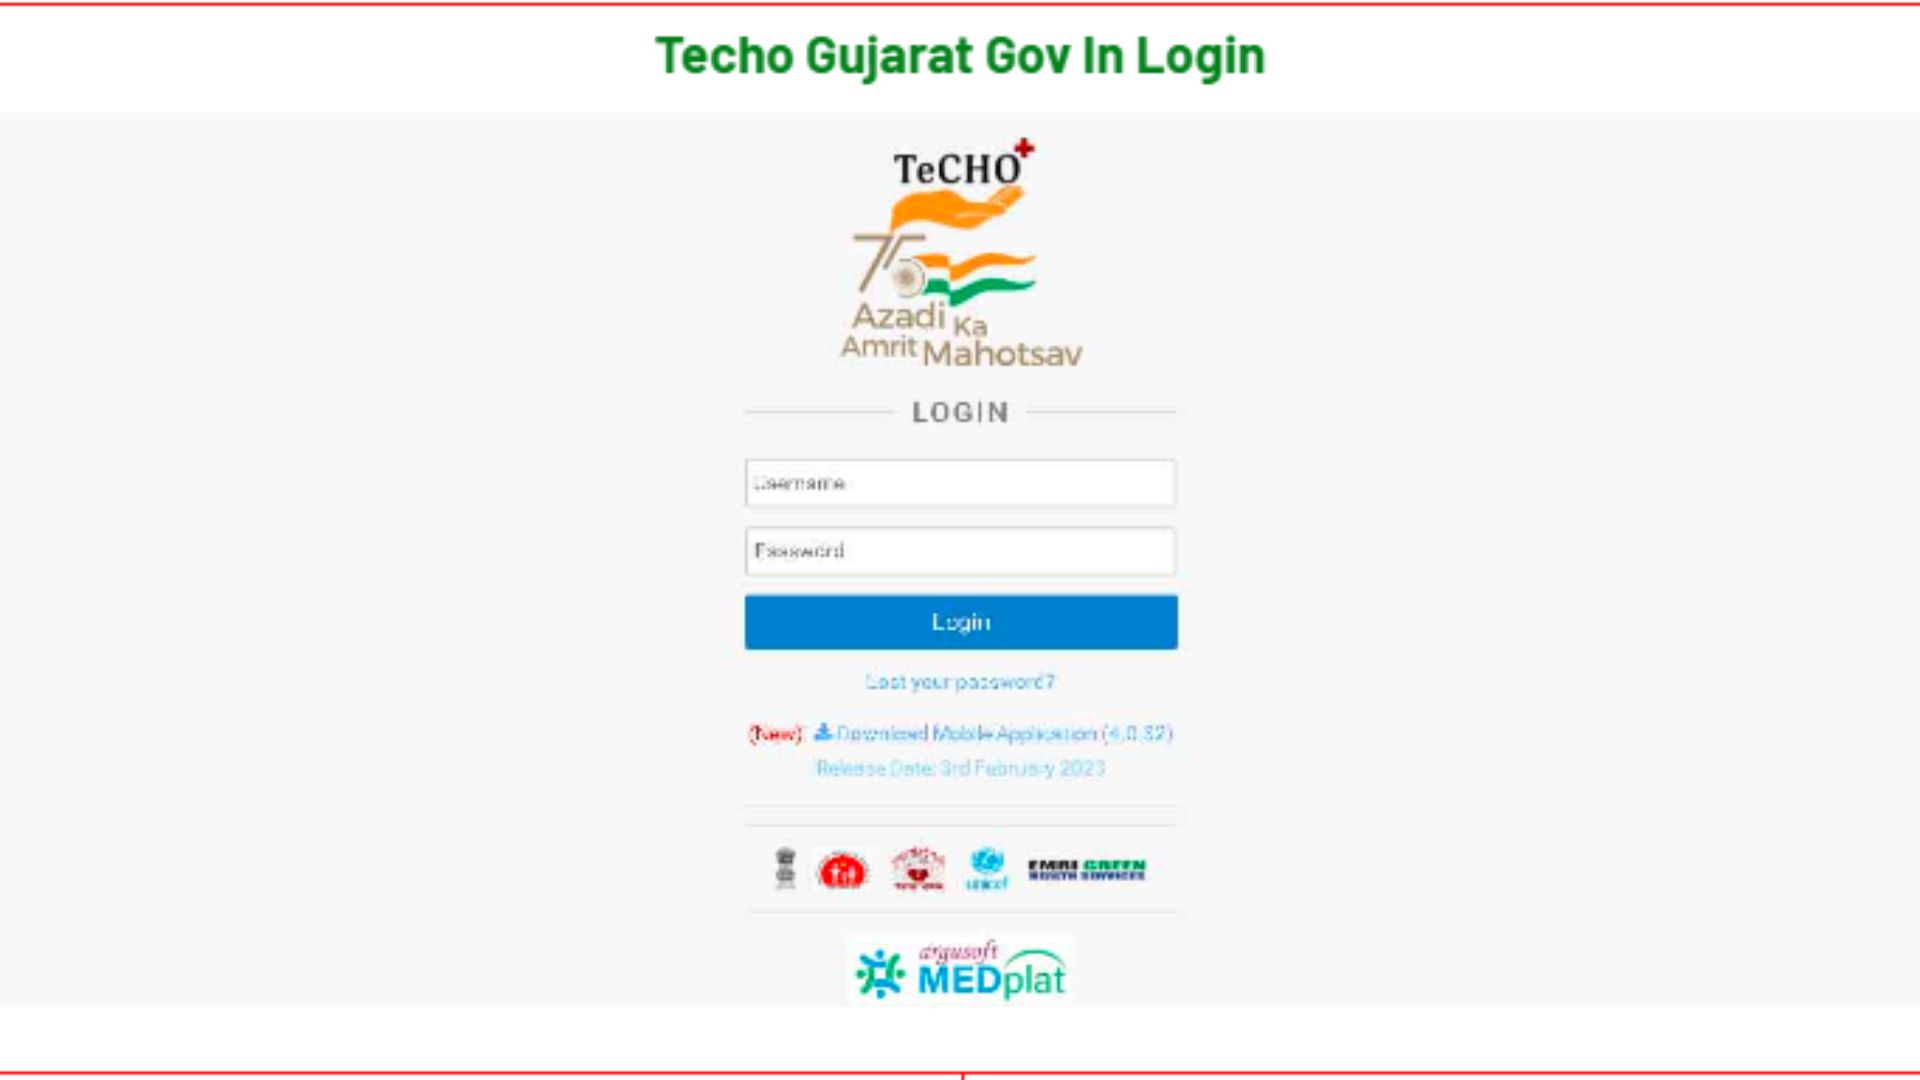 Techo.gujarat.gov.in login